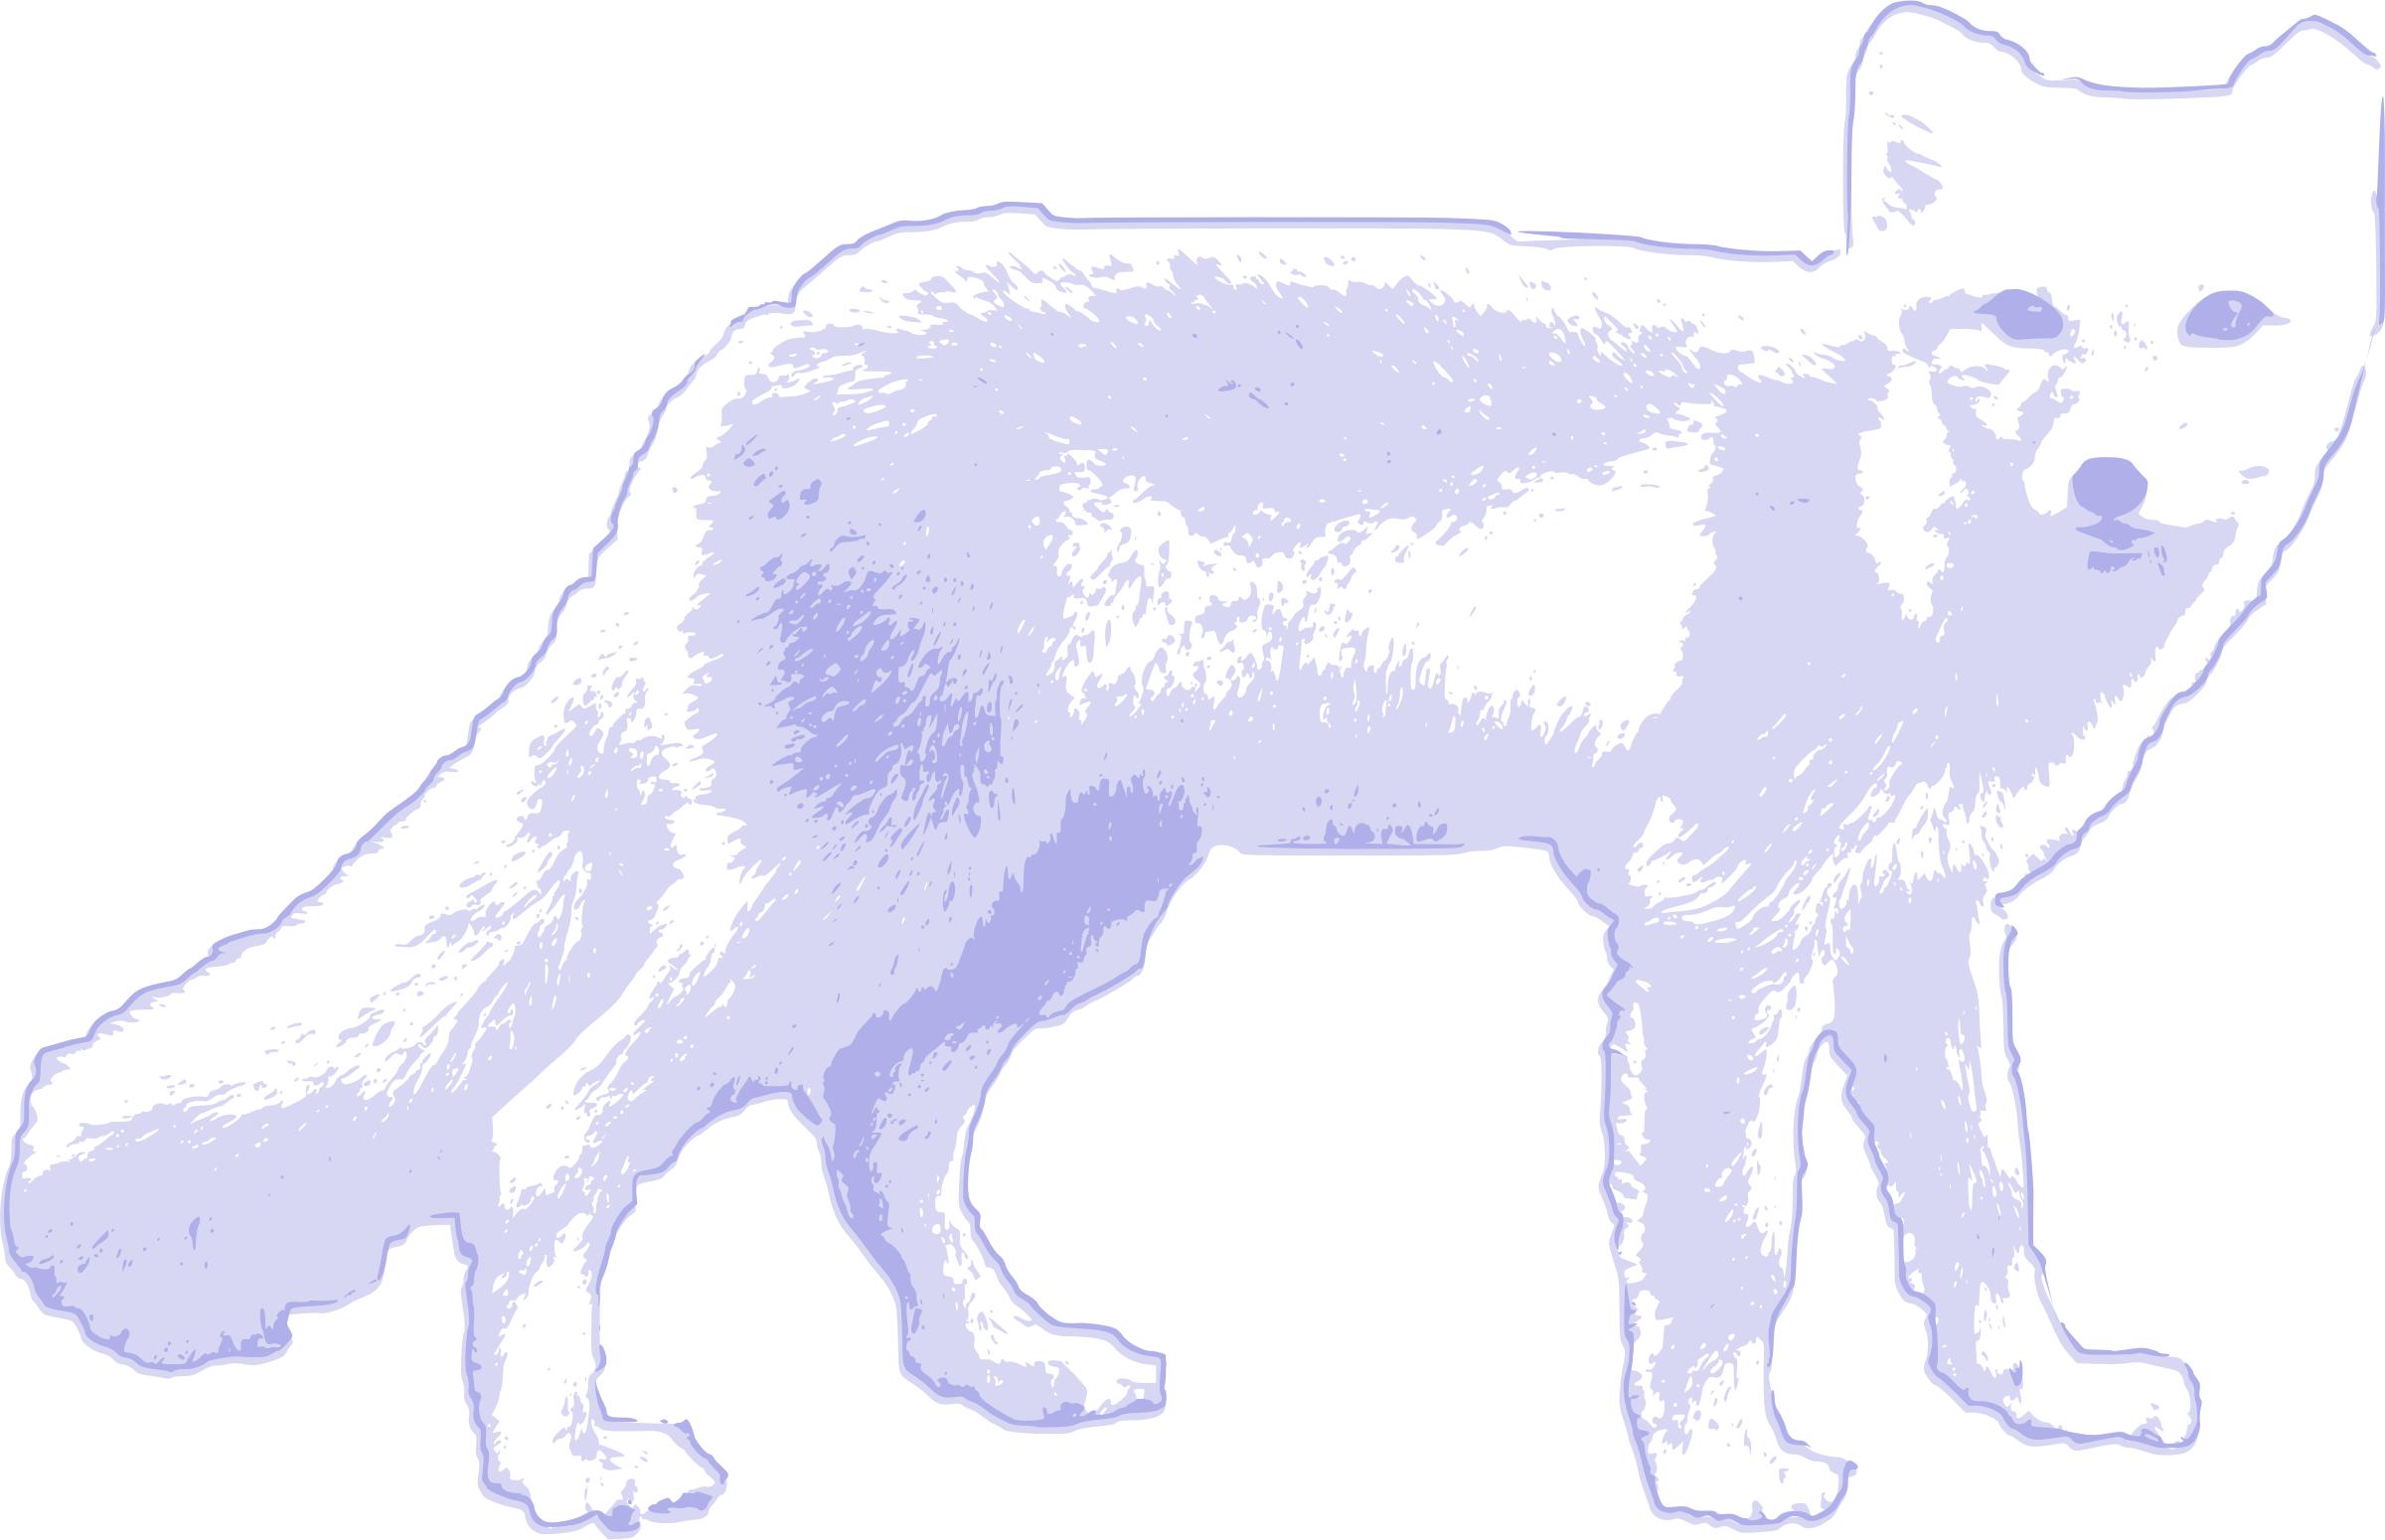 Arctic fox png